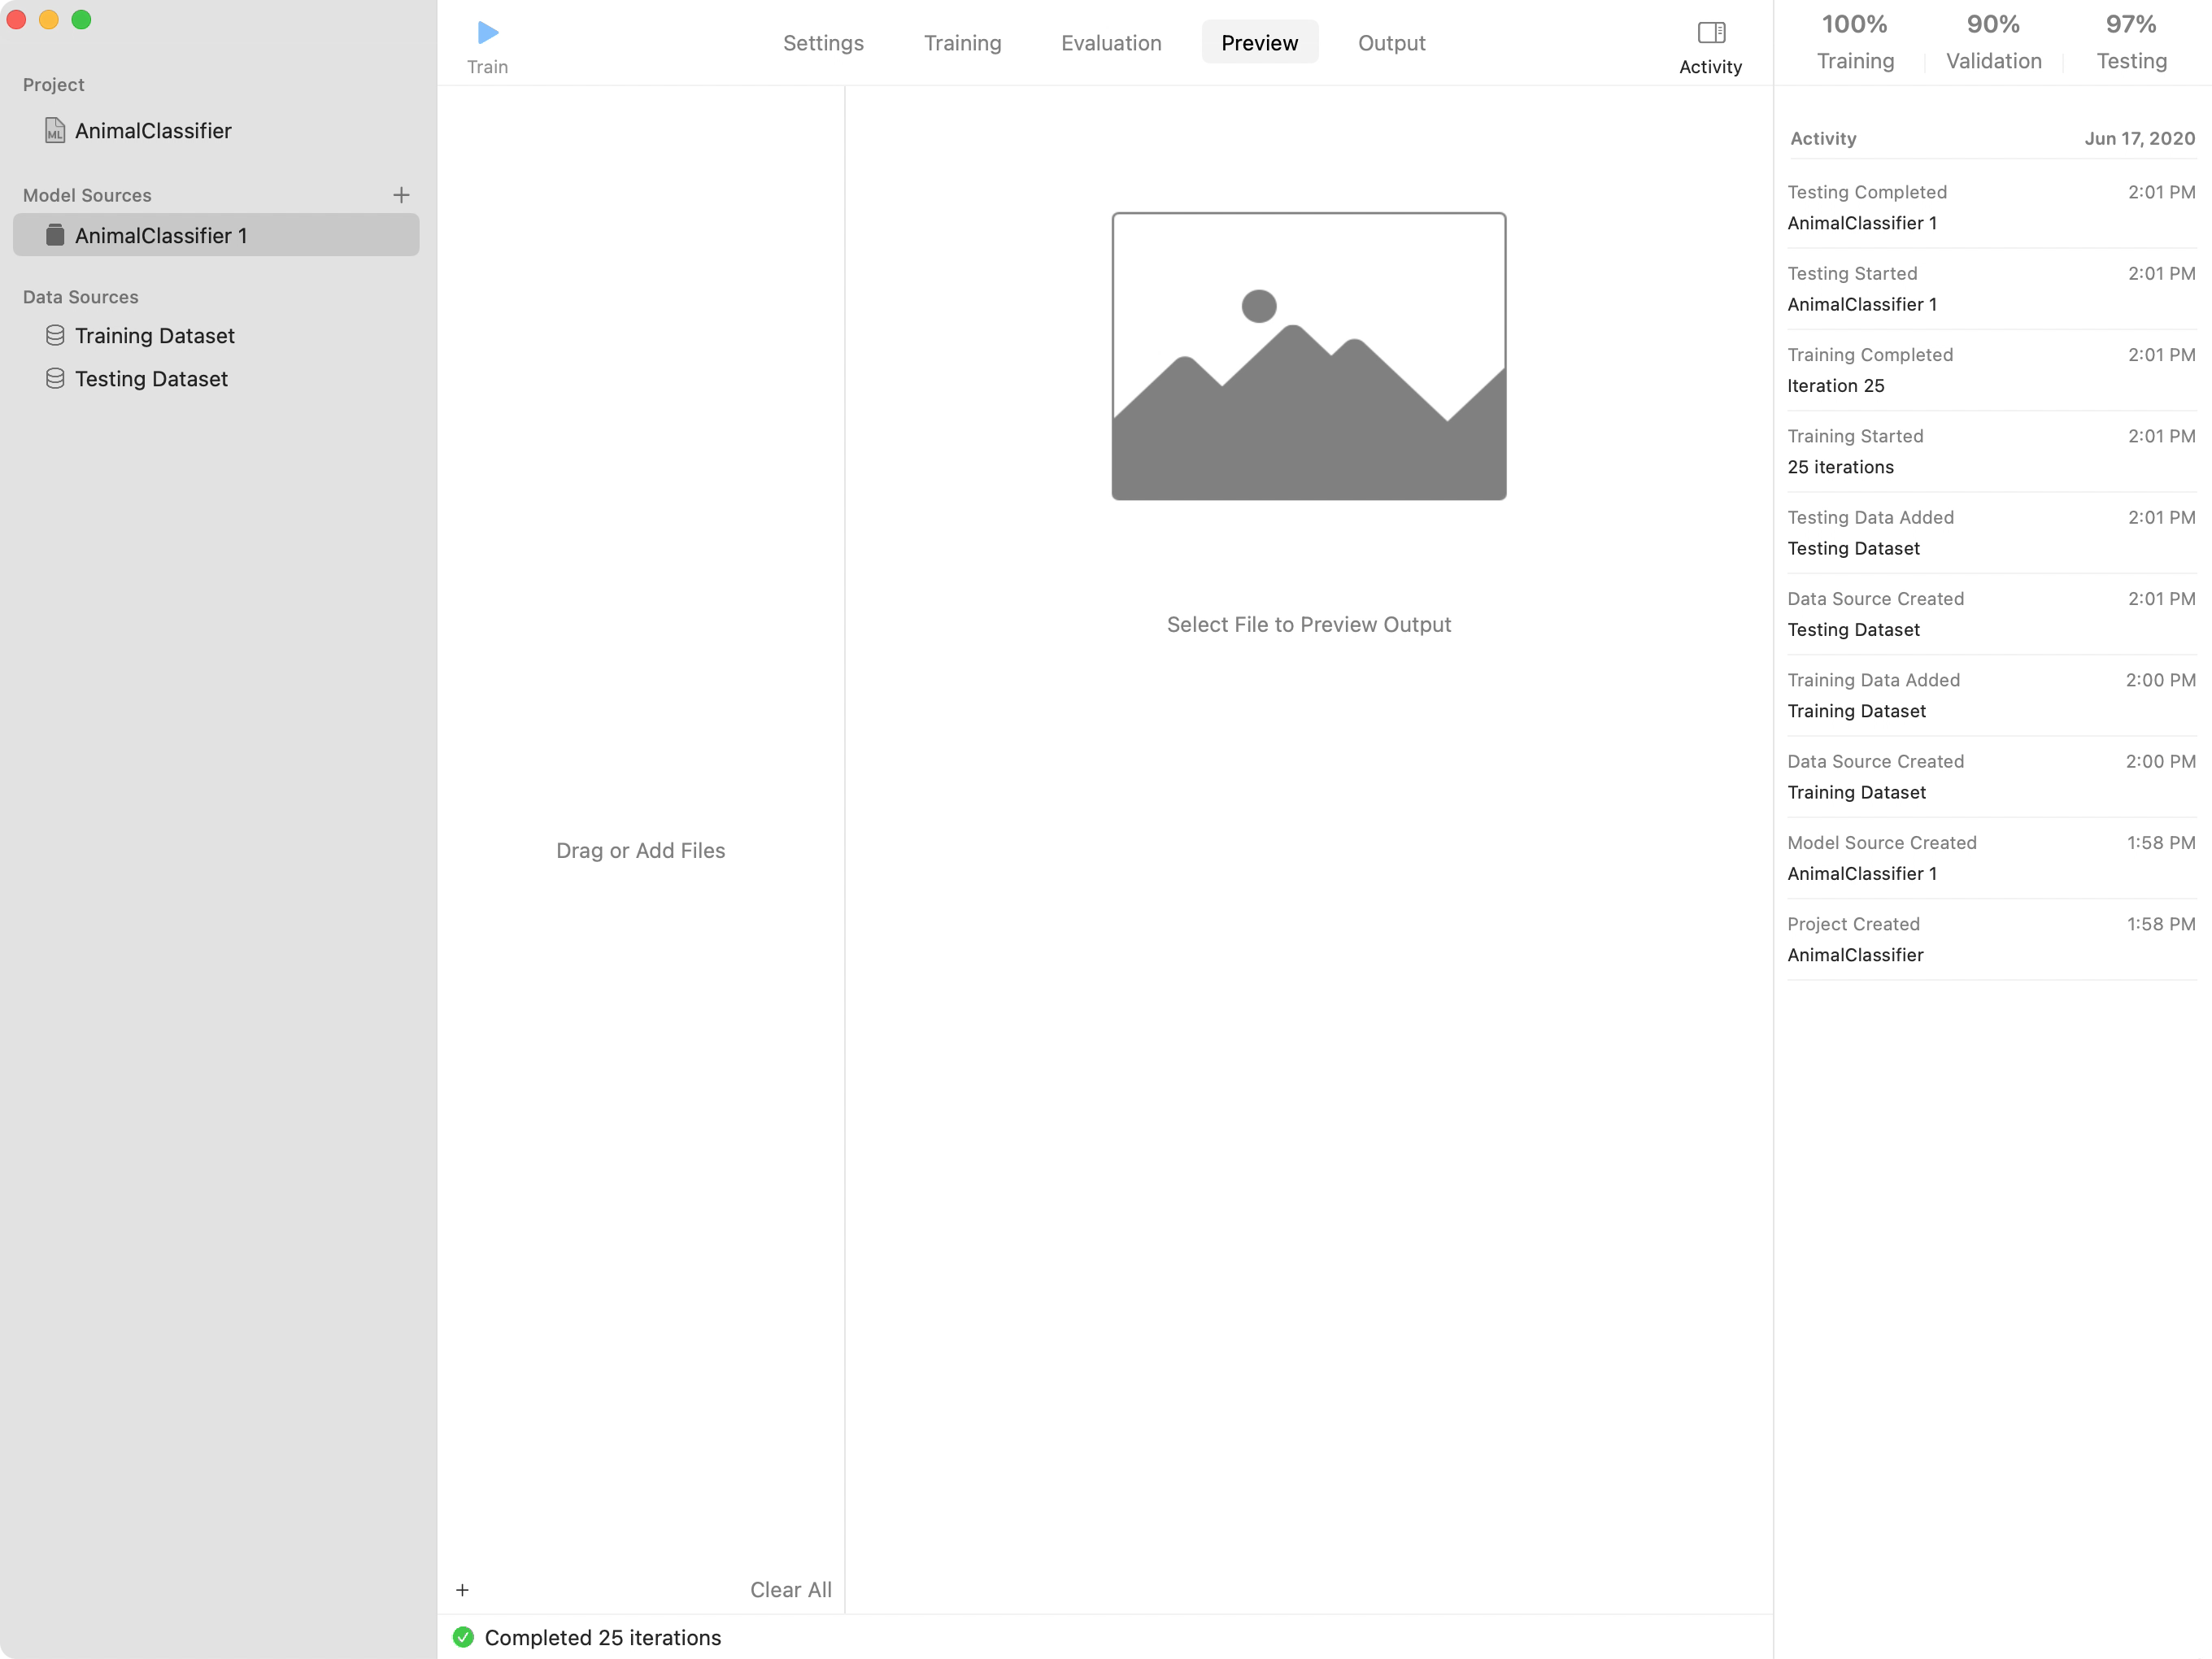 这个截屏显示了项目窗口中的“Preview”(预览) 标签页。